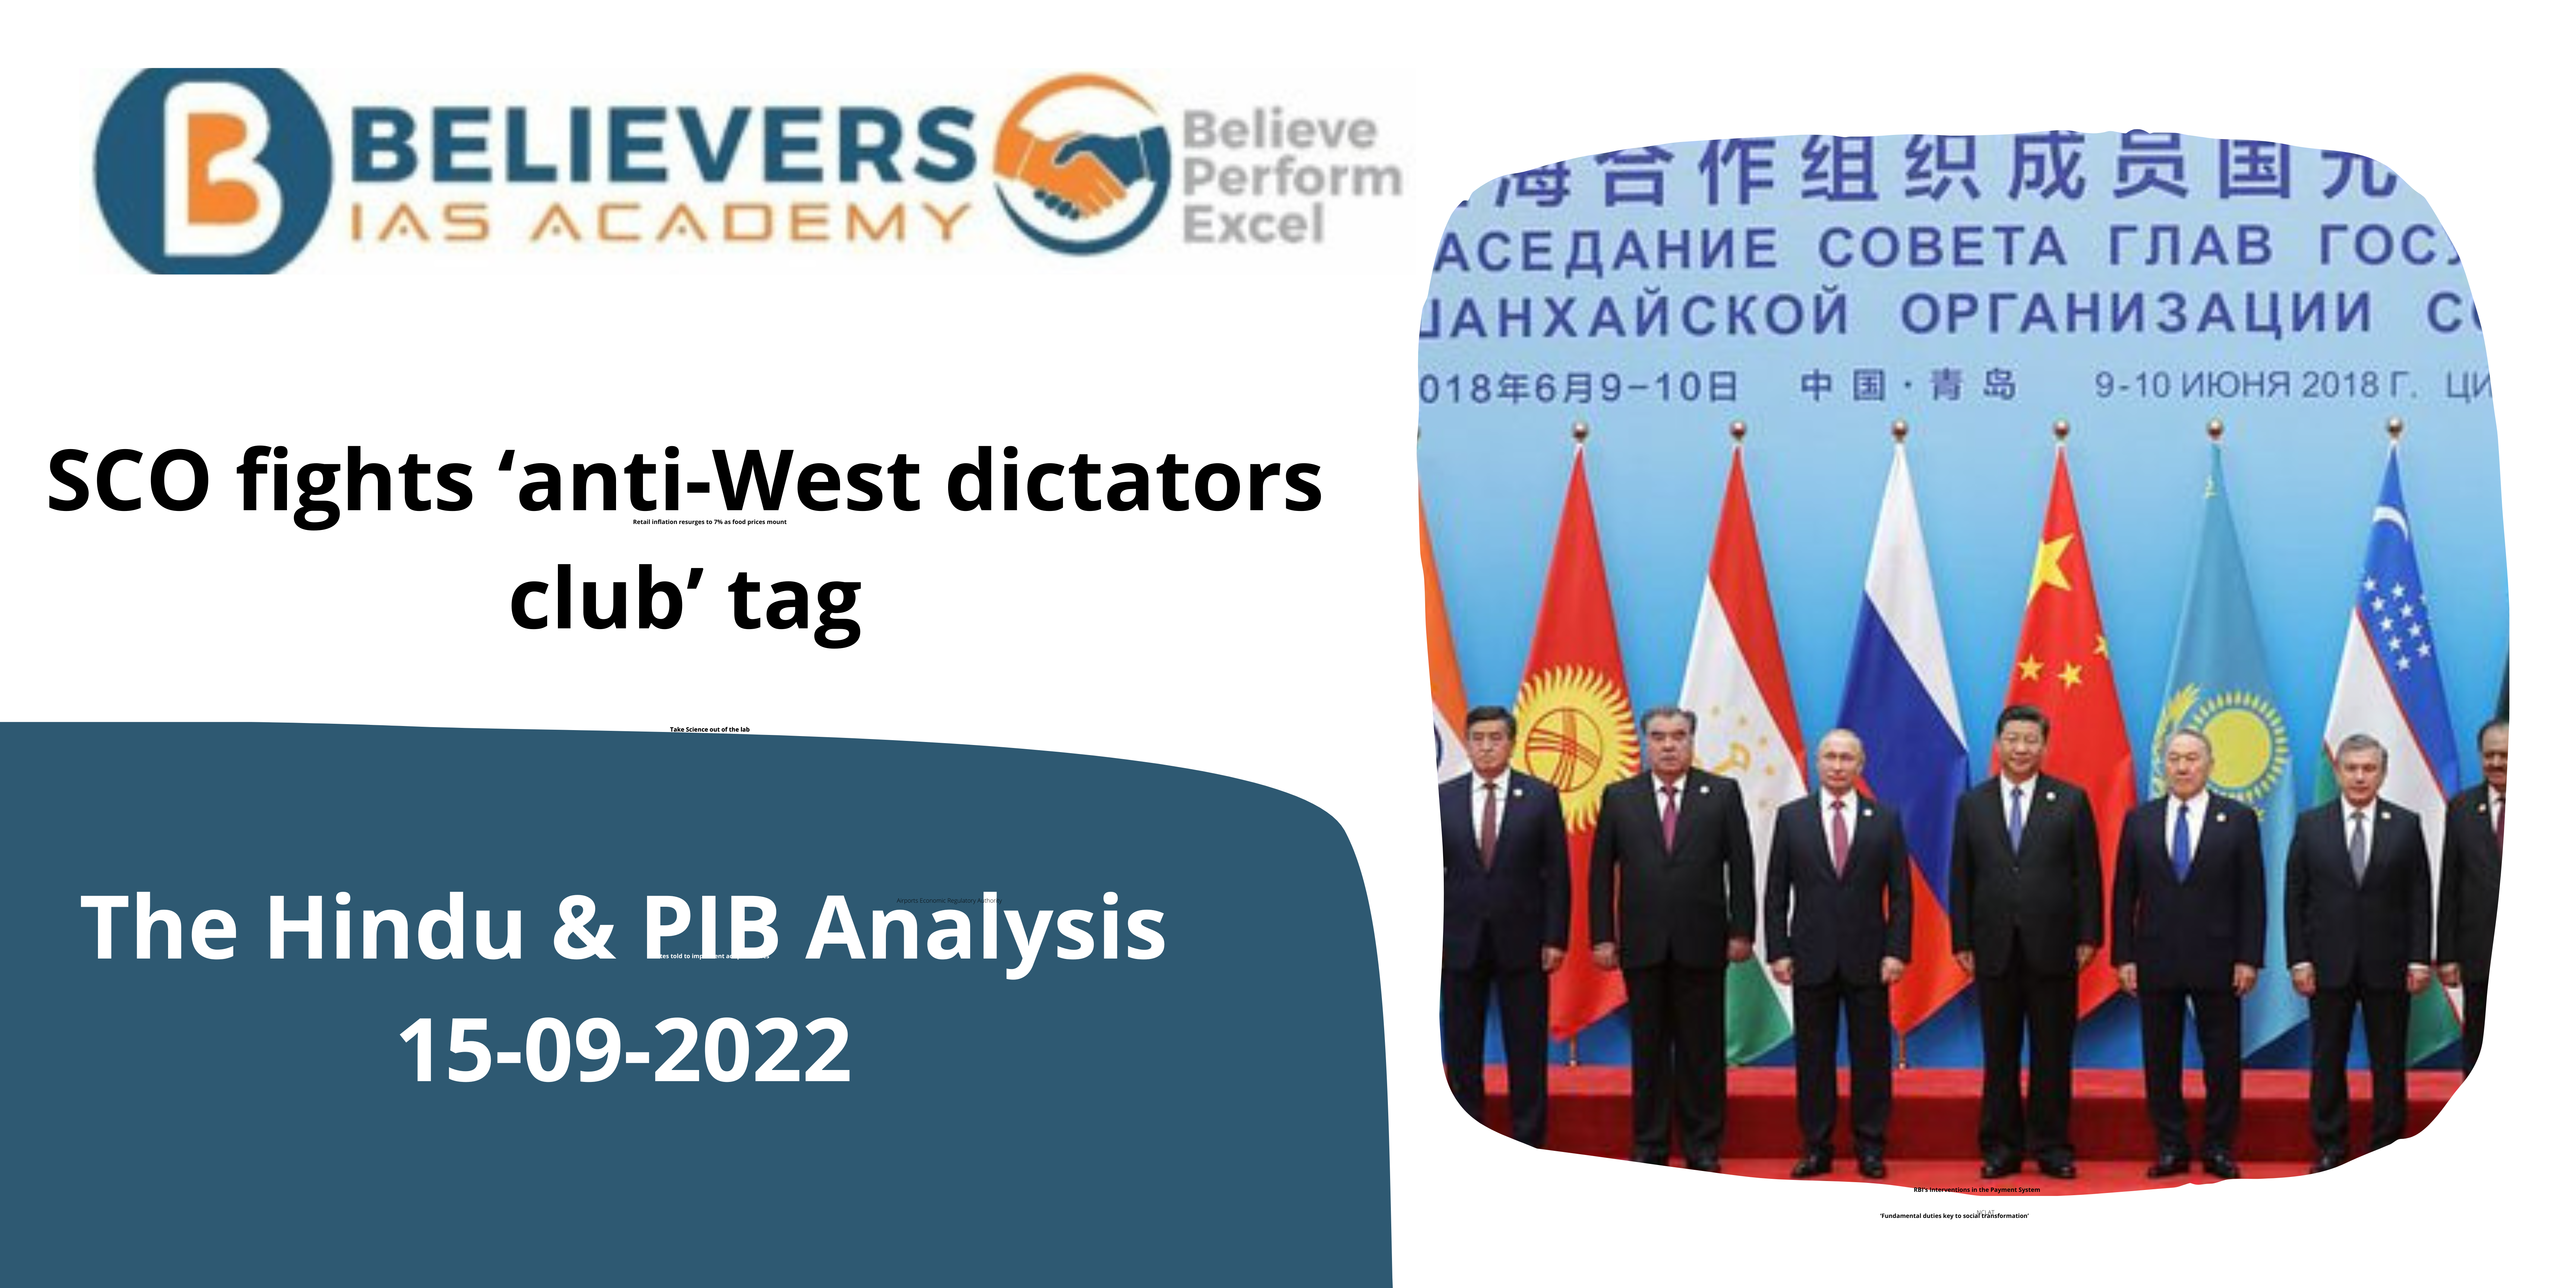 SCO fights ‘anti-West dictators club’ tag